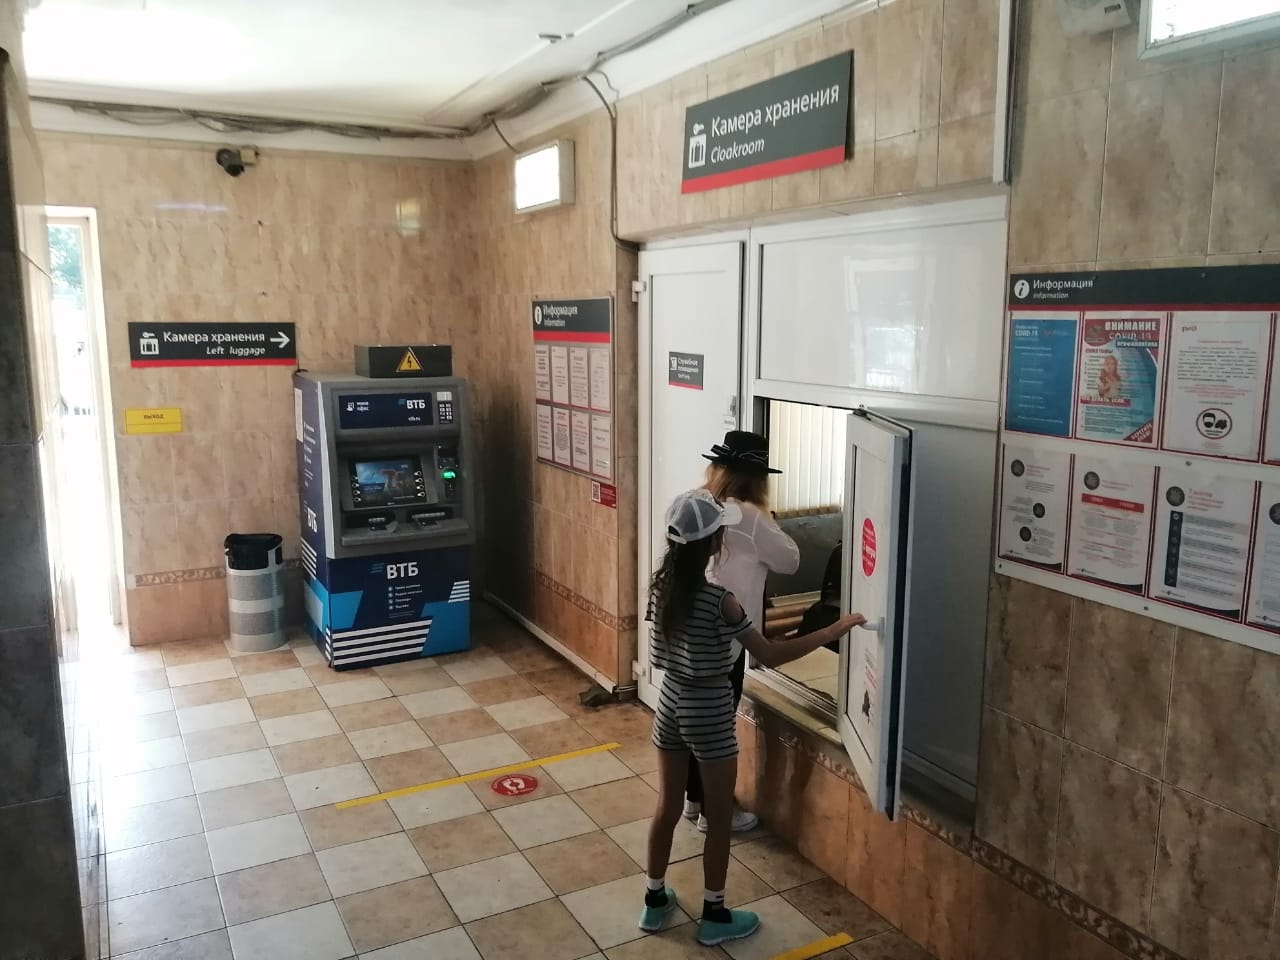 московский вокзал камера хранения